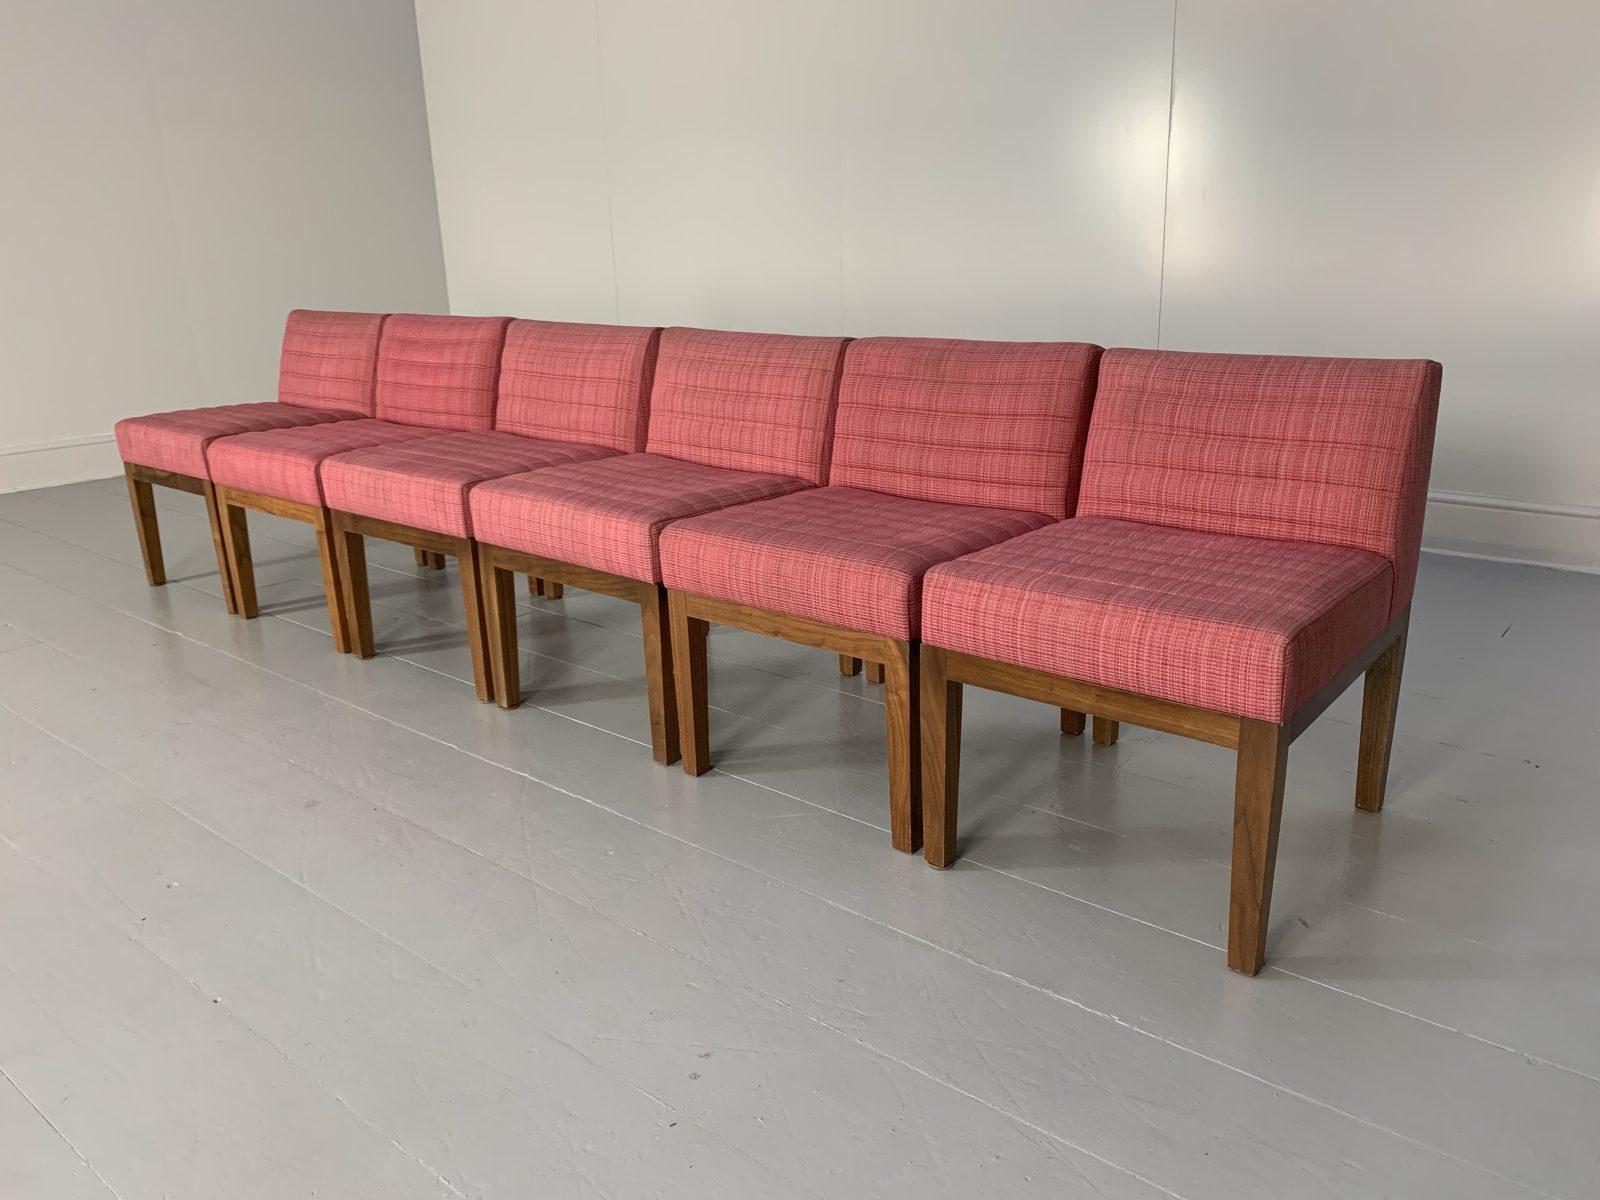 Bonjour les amis, et bienvenue à une nouvelle offre incontournable de Lord Browns Furniture, la première source de canapés et de chaises de qualité au Royaume-Uni.

Nous vous proposons un superbe ensemble de 6 chaises de salle à manger/de chevet